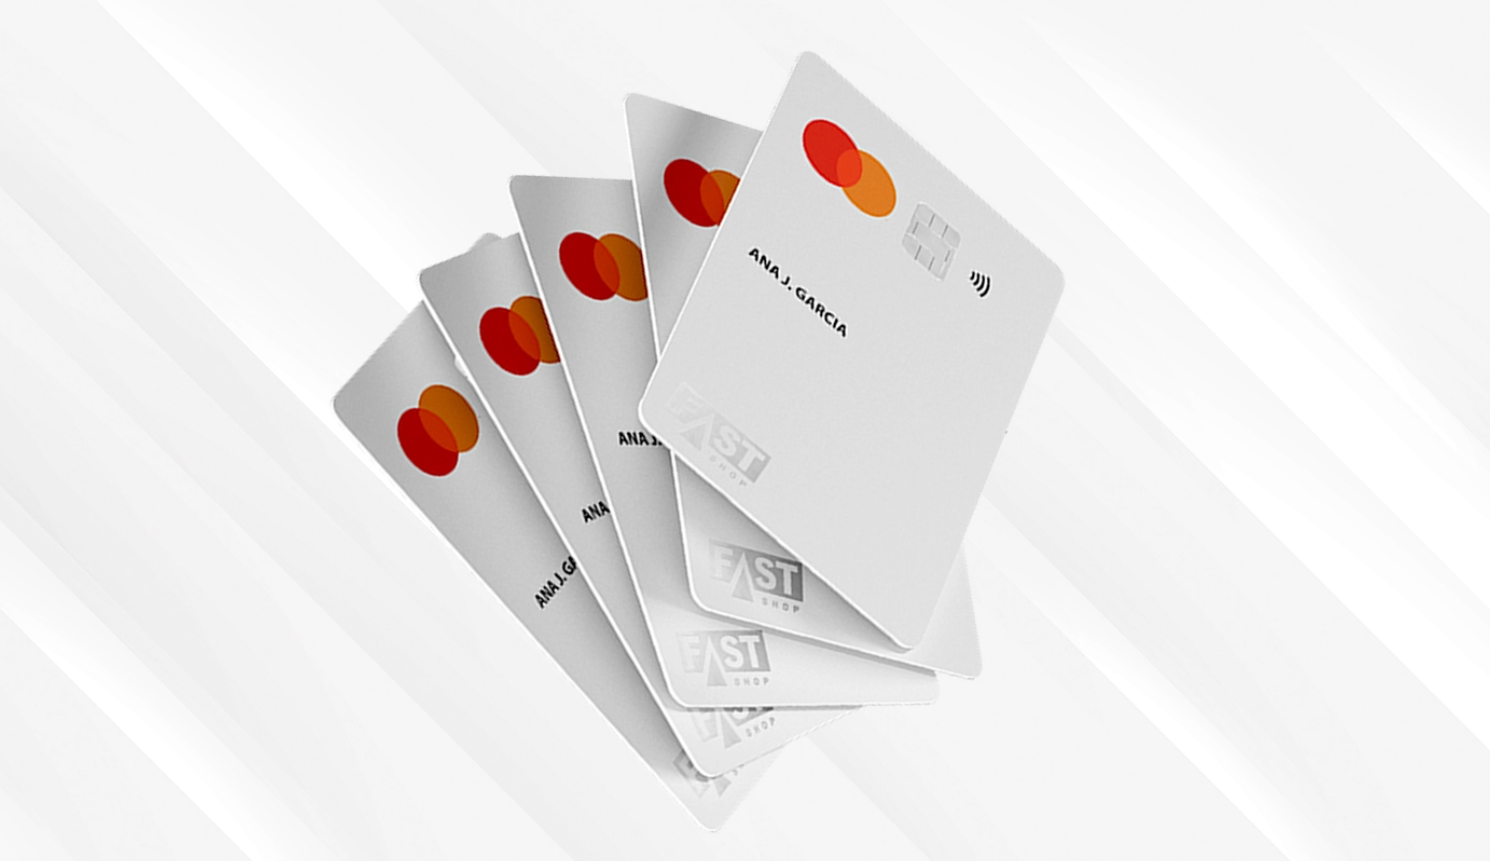 Como solicitar o cartão Fast Shop Pay? Descubra o passo a passo simples e aproveite!